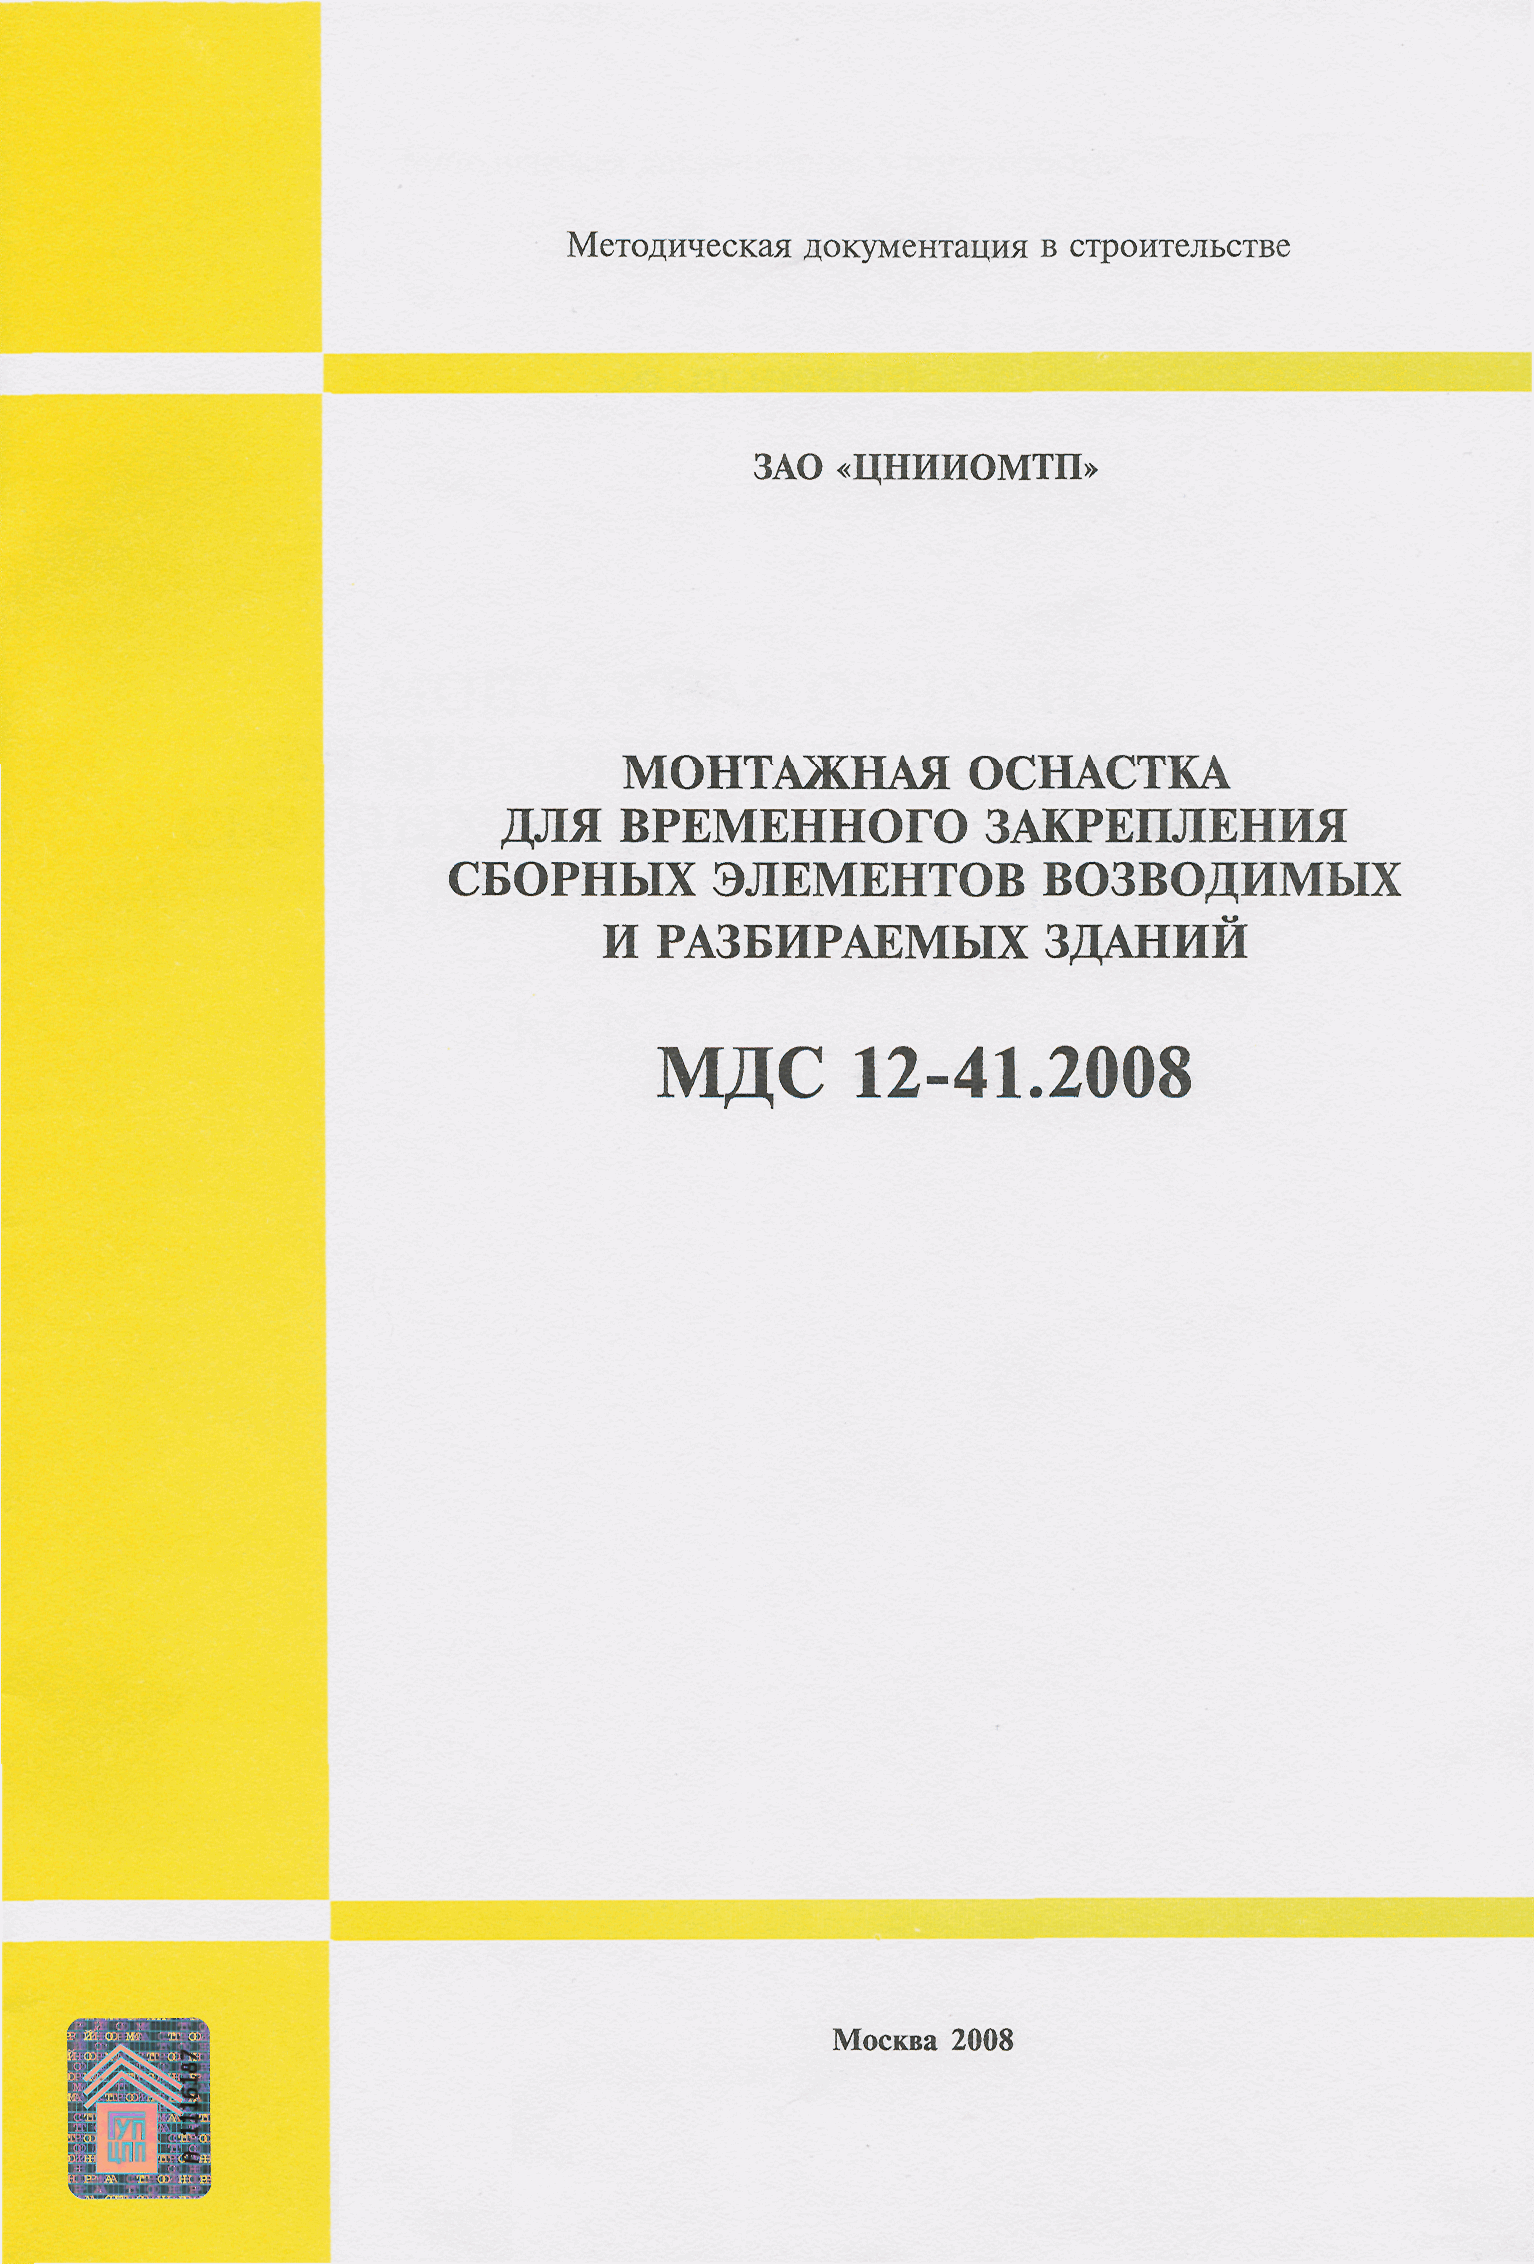 МДС 12-41.2008